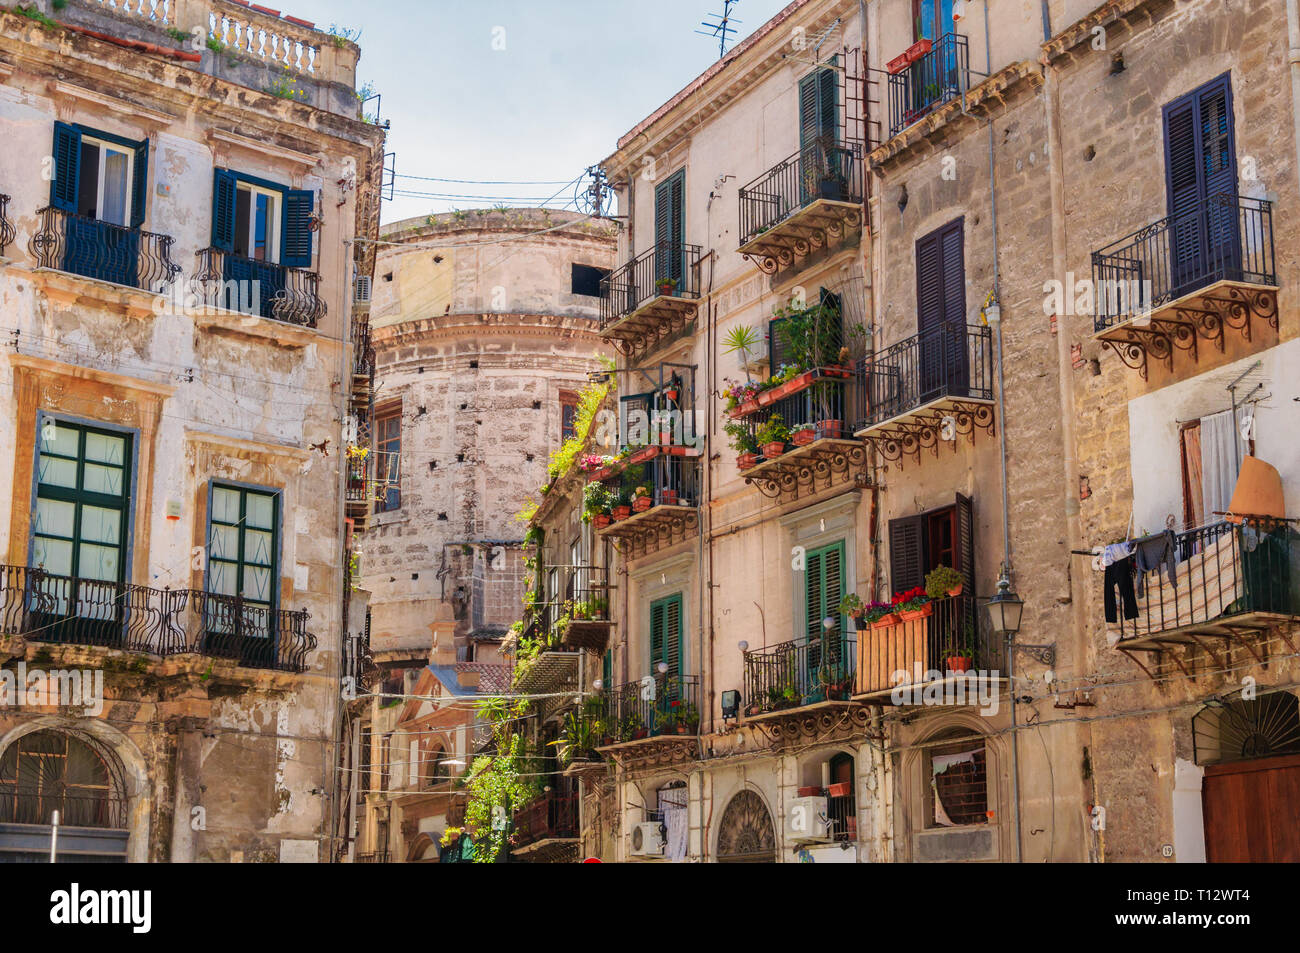 Palerme, Sicile, Italie : vue sur la rue des vieux bâtiments dans la partie historique de la ville Banque D'Images